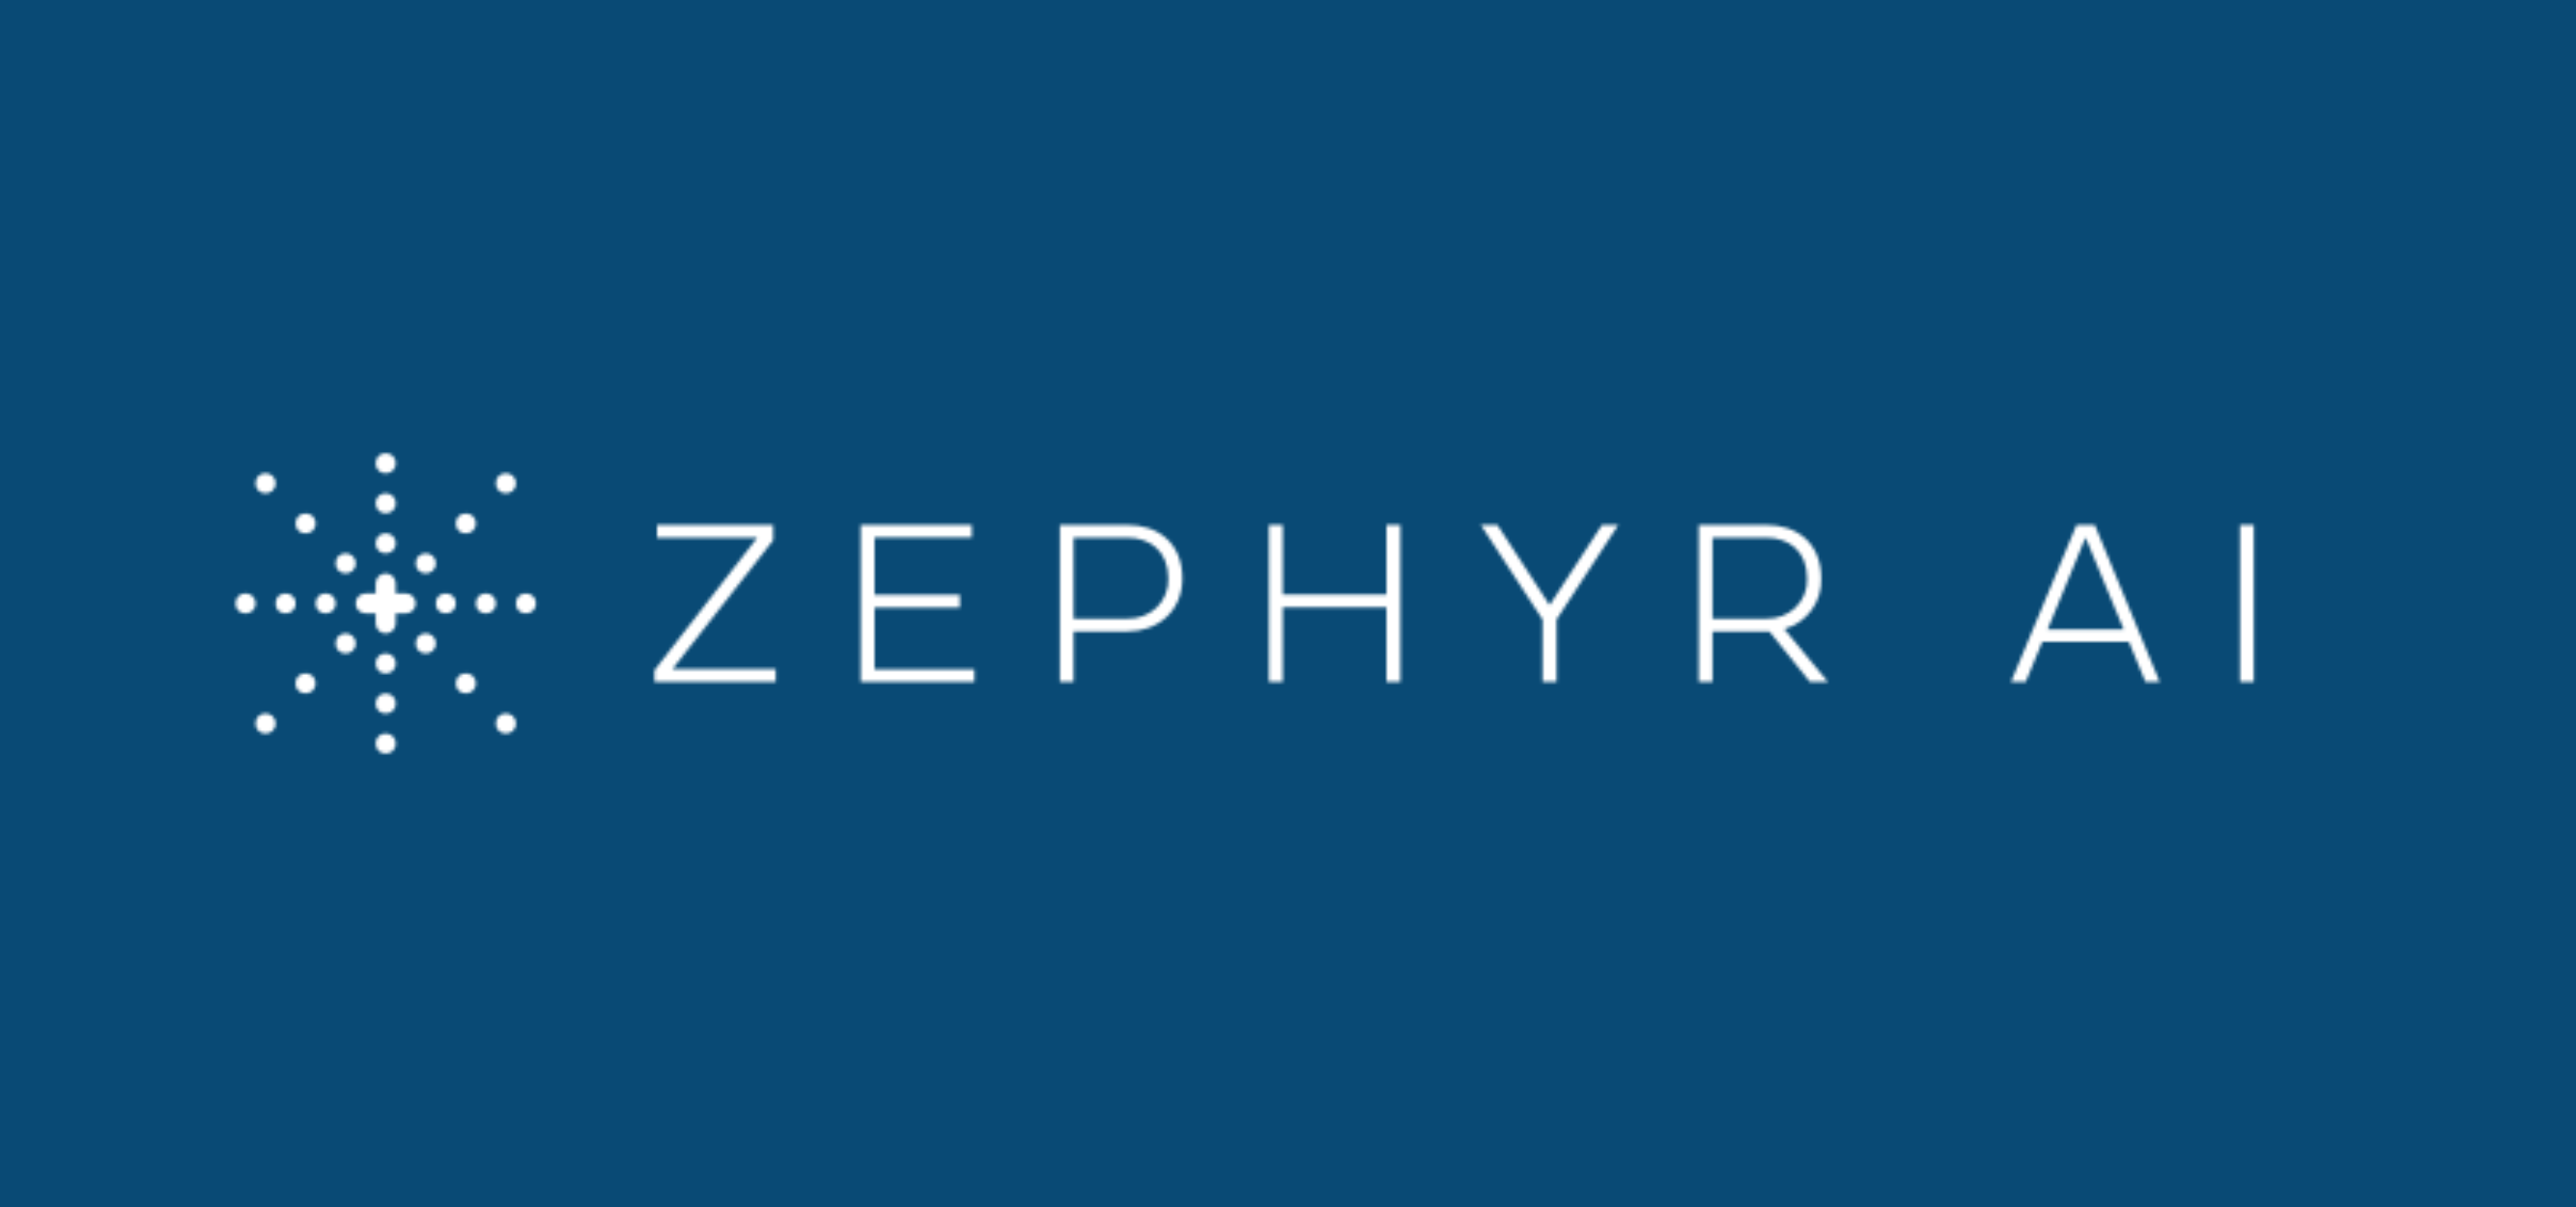 Zephyr AI